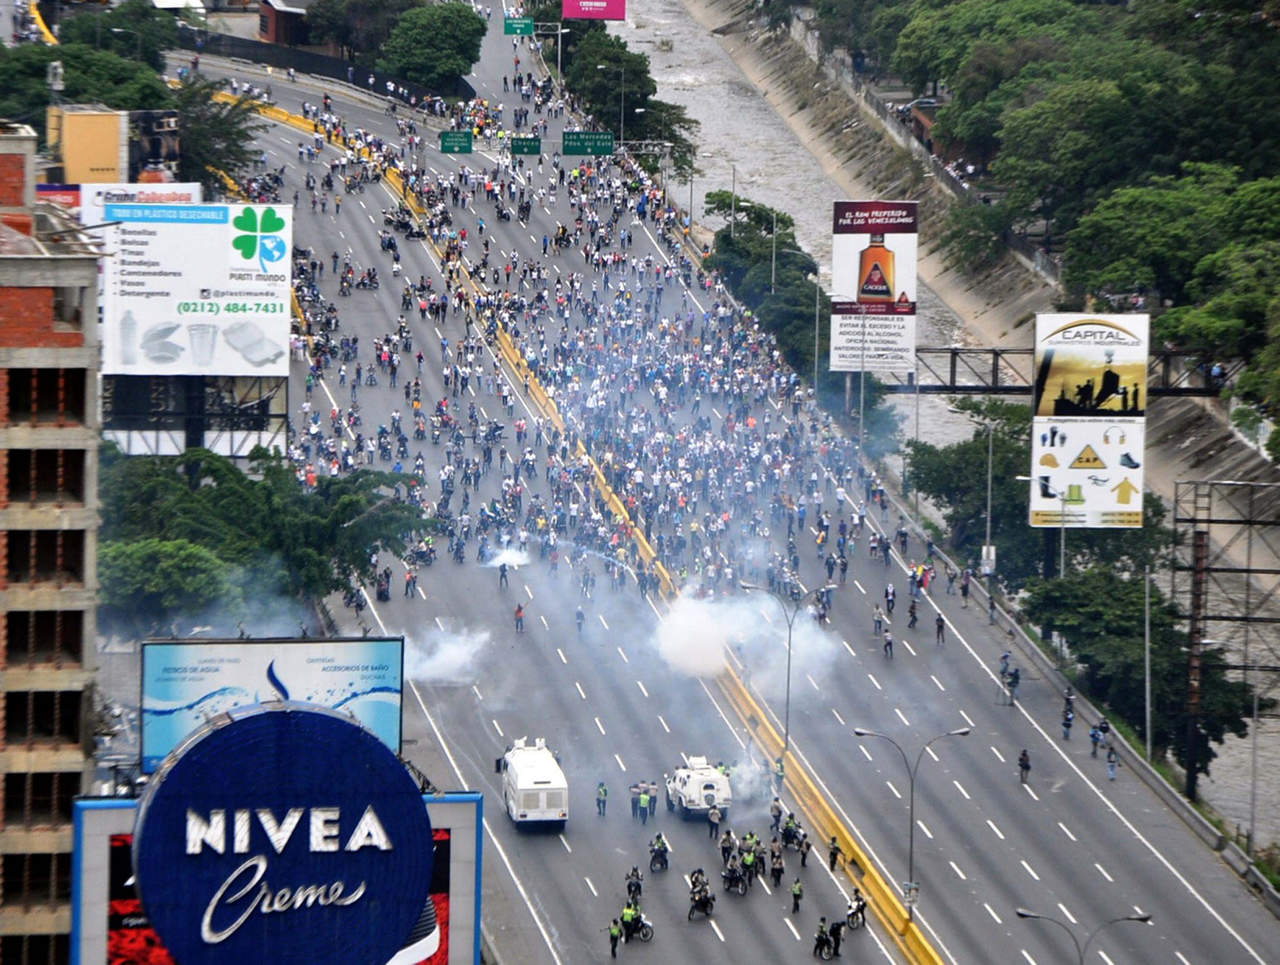 Condenan nueve países violencia en Venezuela